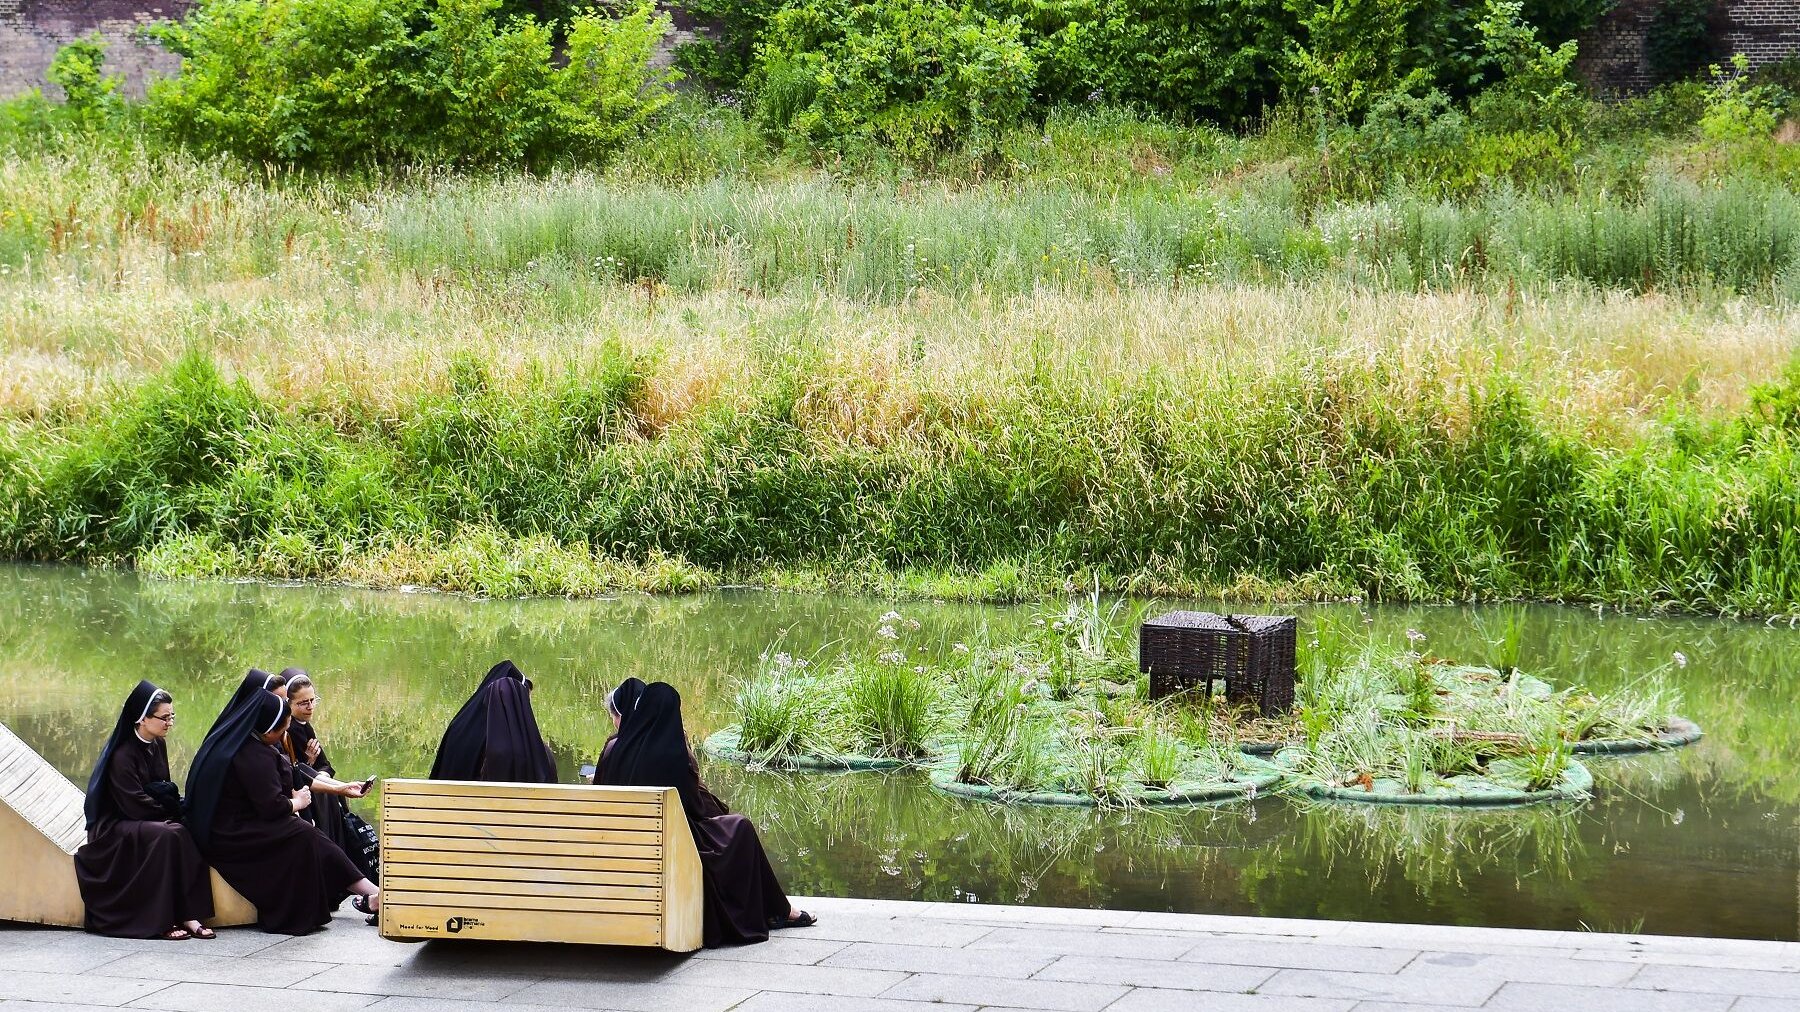 Na rzece Cybinie, w sąsiedztwie Bramy Poznania, pojawiły się pływające ogrody/ fot. fot. Michał Strokowski